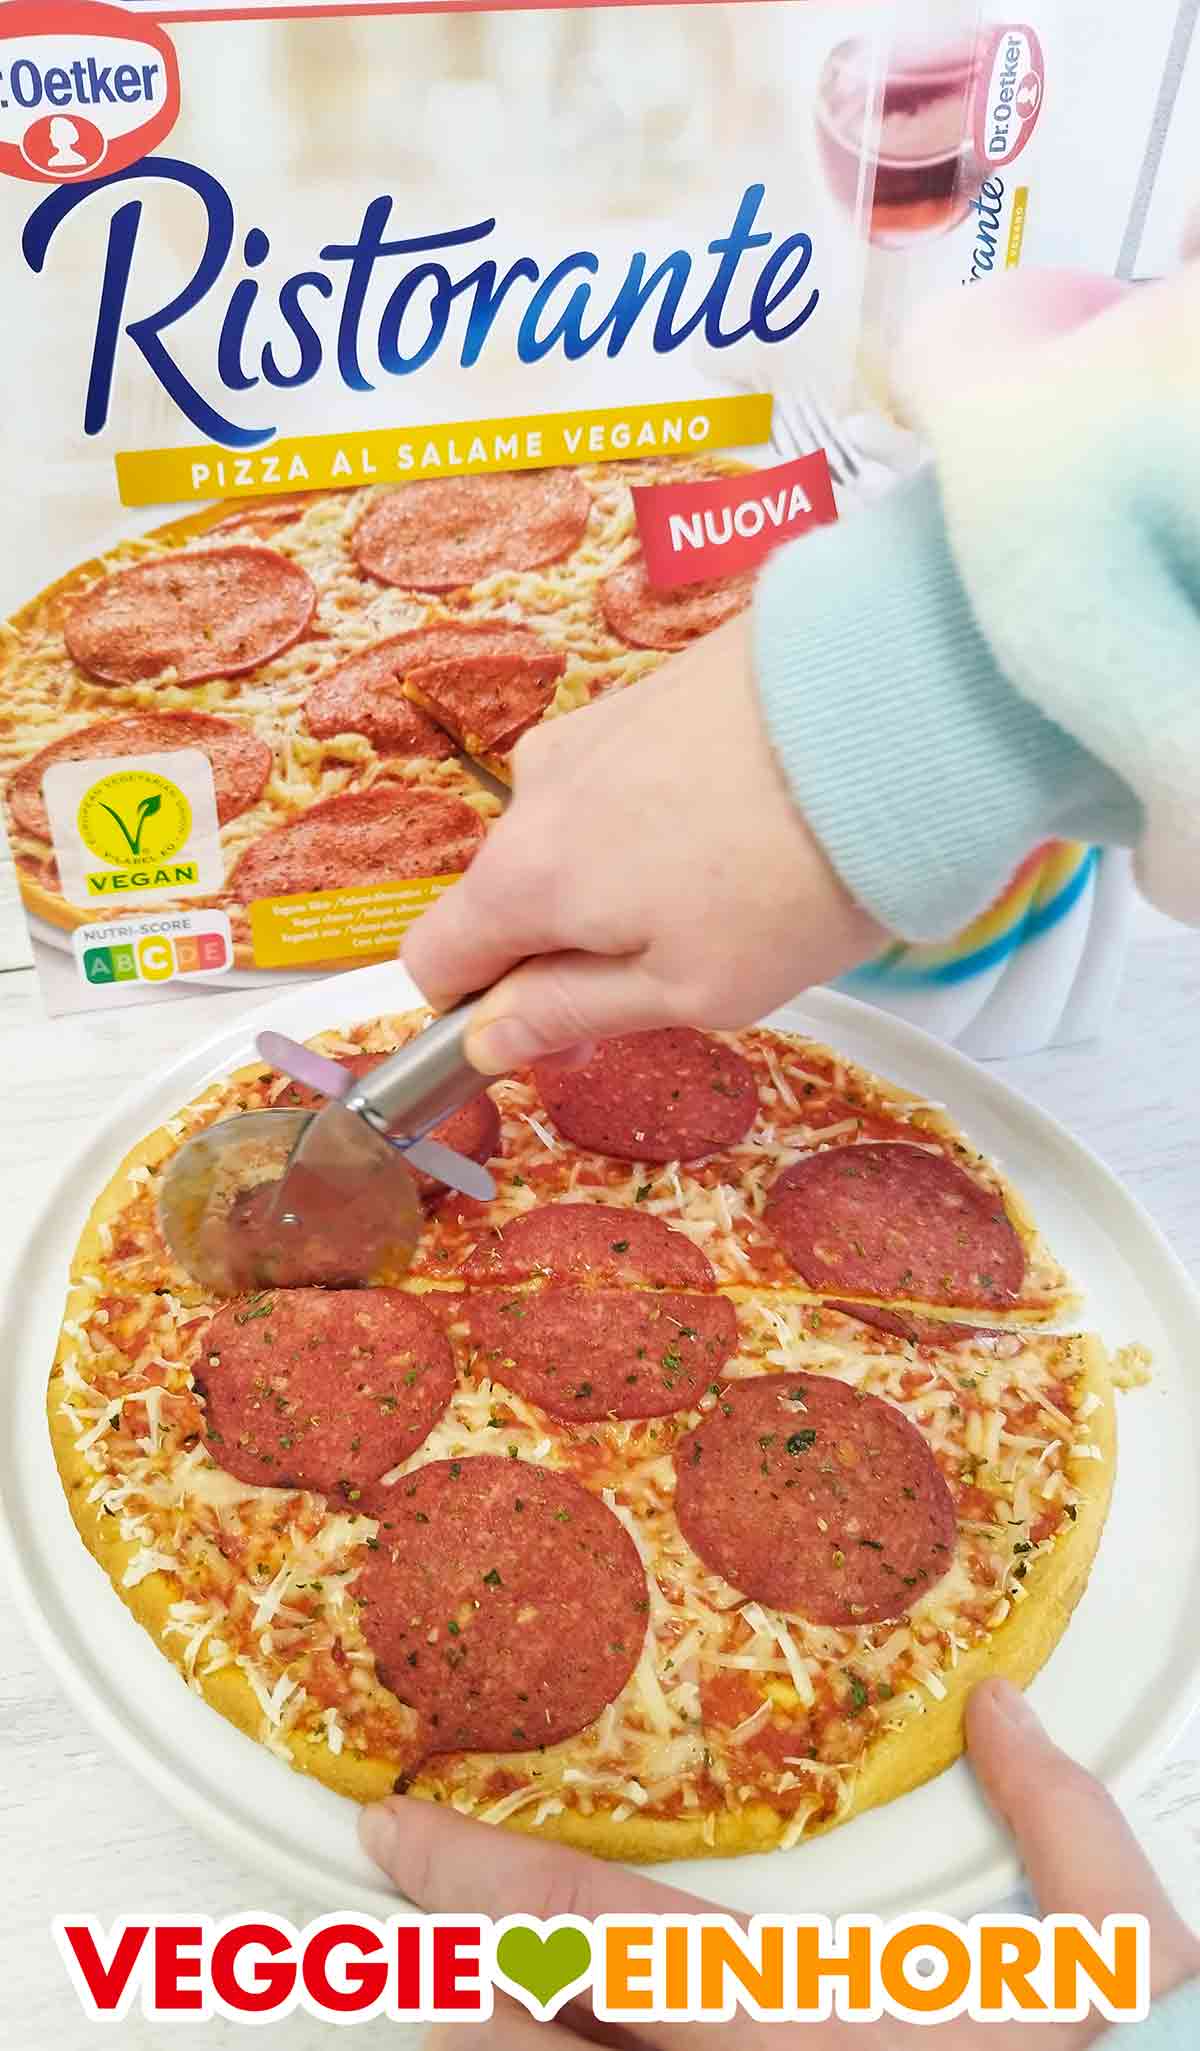 Schneiden der veganen Salami Pizza Ristorante mit einem Pizzaroller